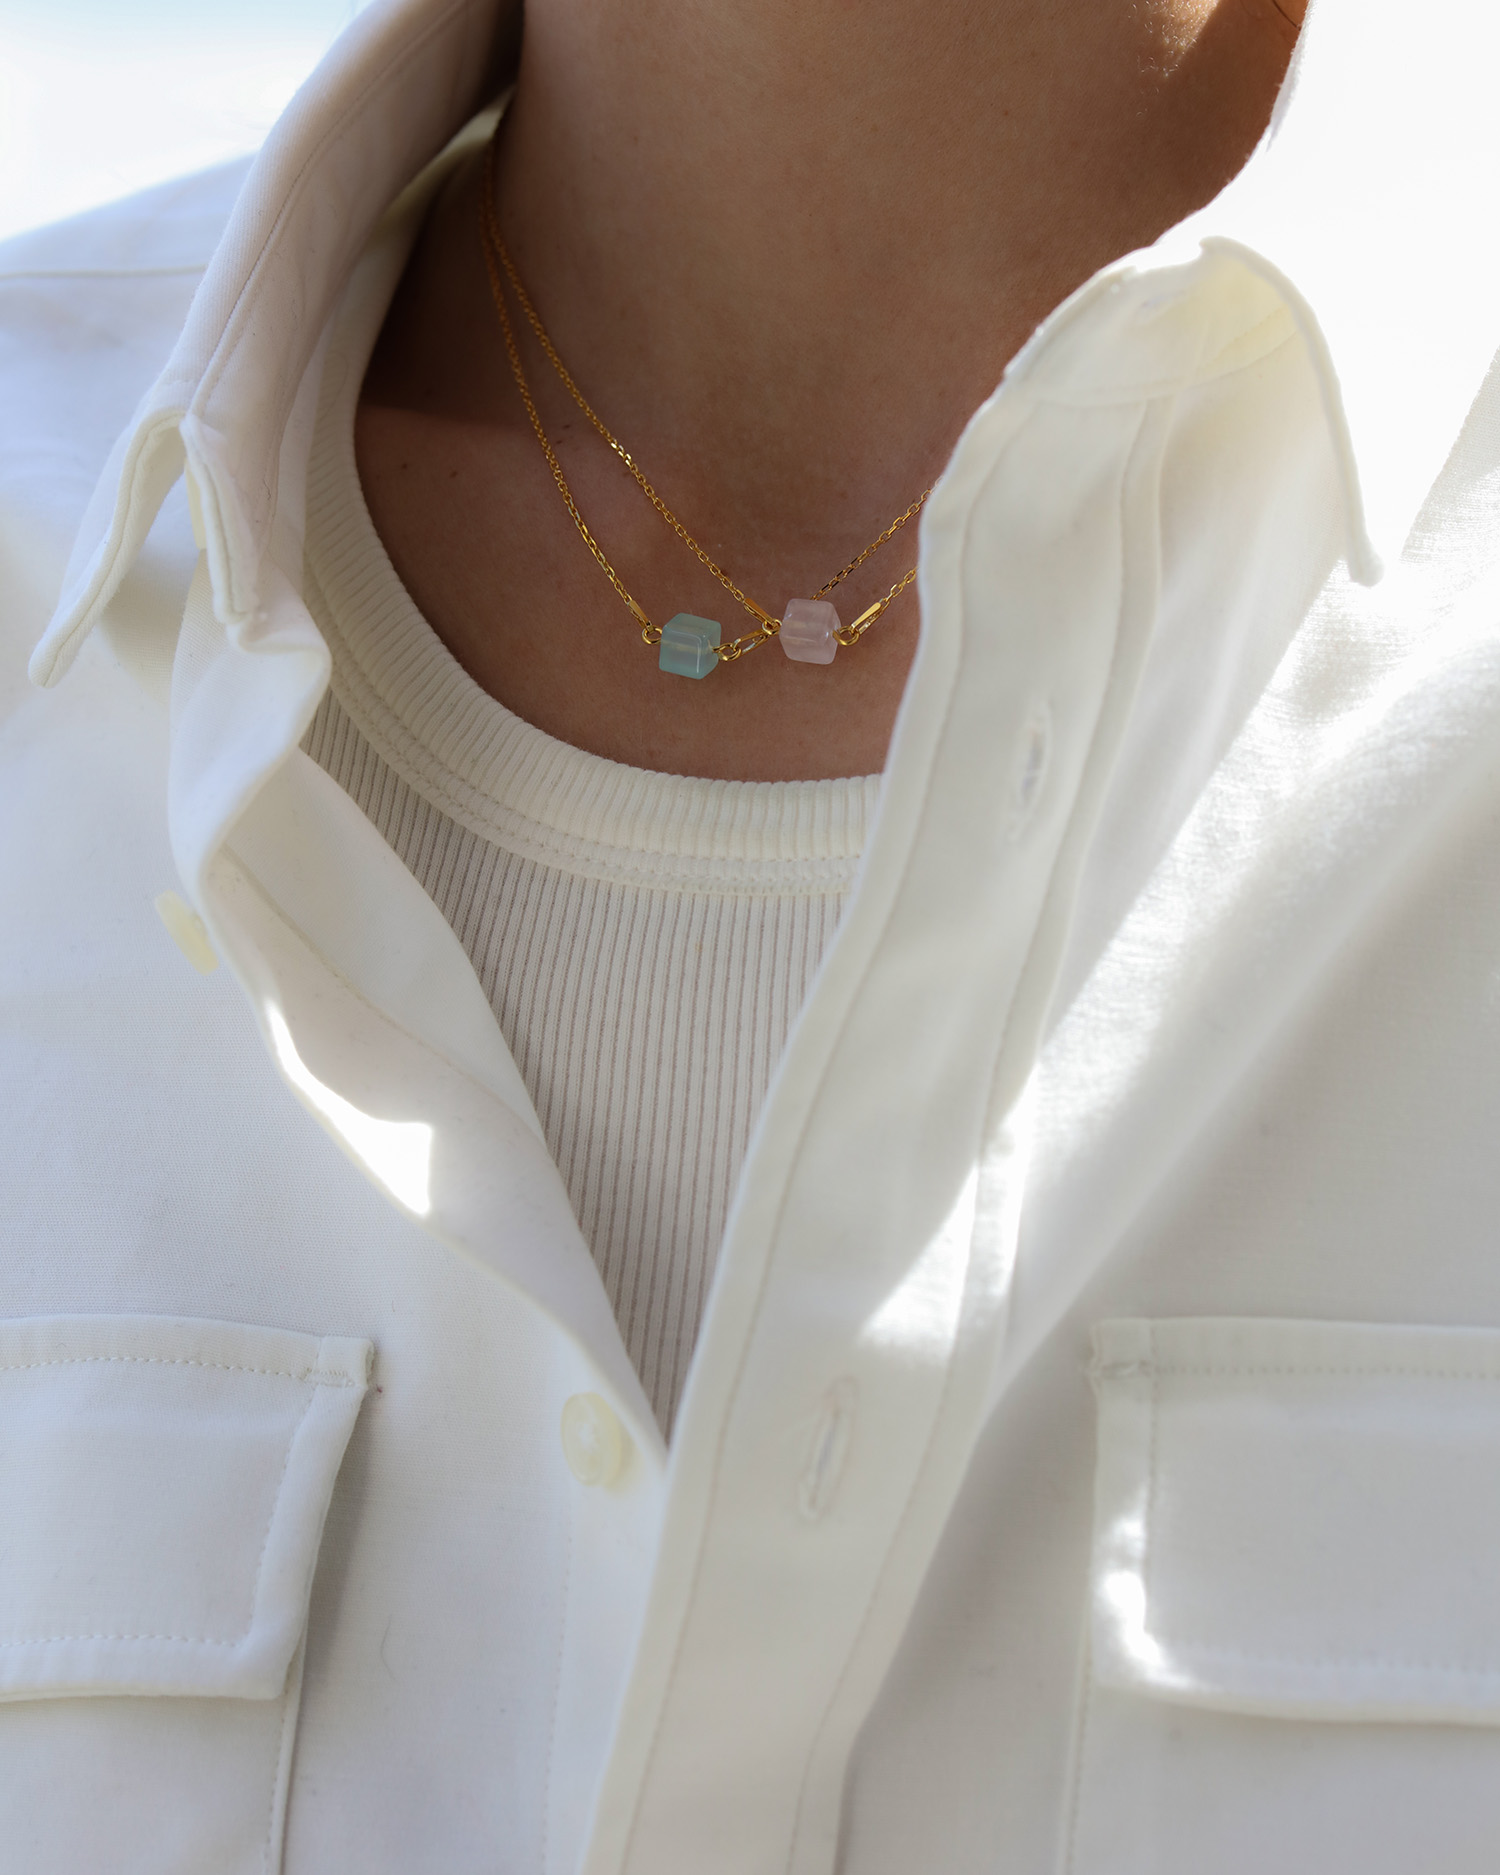 metaformi_design_jewelry_cube_necklace_aquamarine__rose_quartz_model